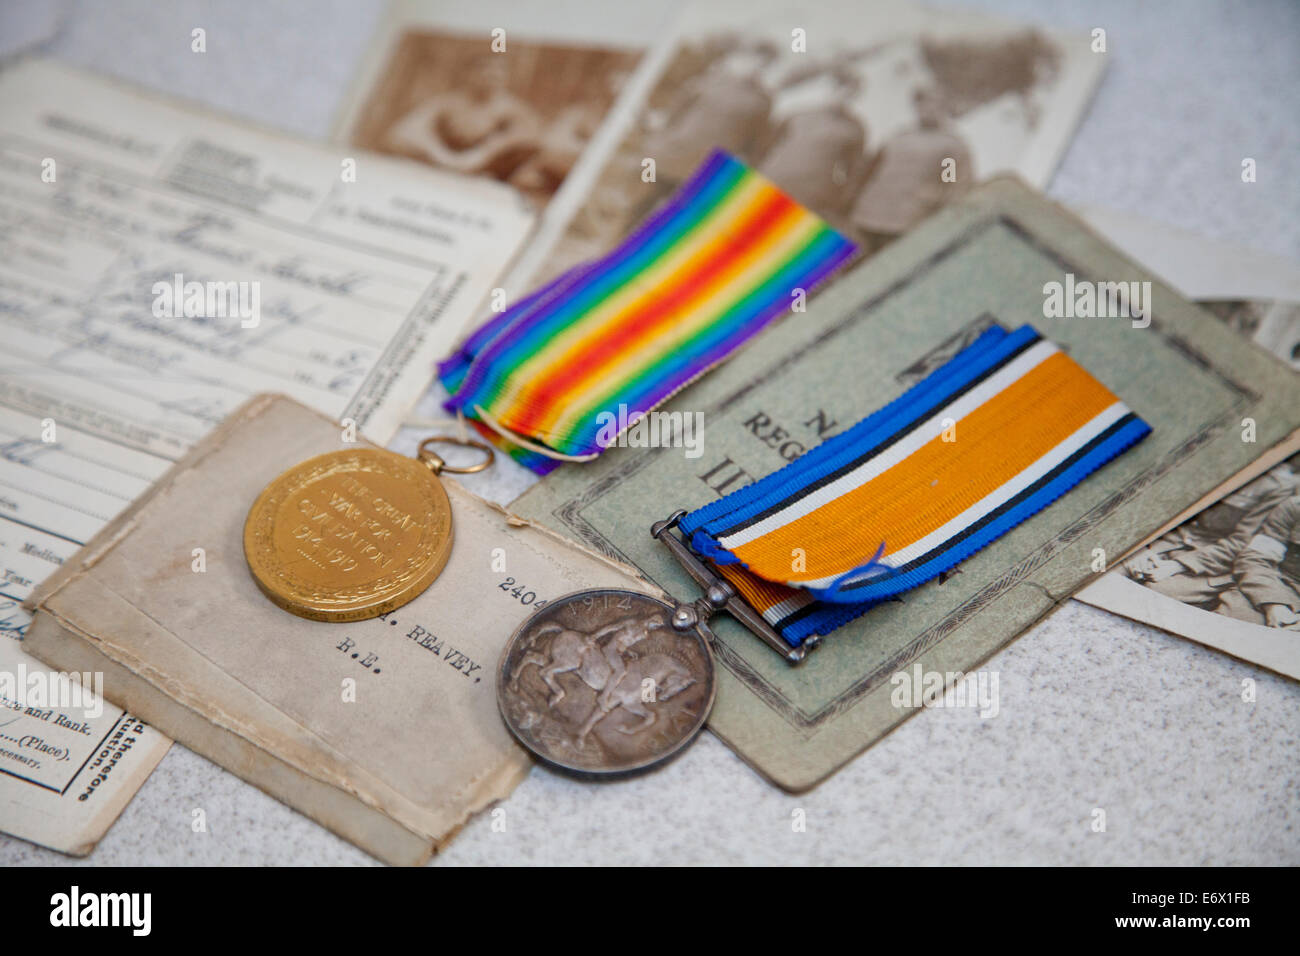 Ersten Weltkrieg Medaillen auf Kriegszeit Dokumente und Fotos Stockfoto